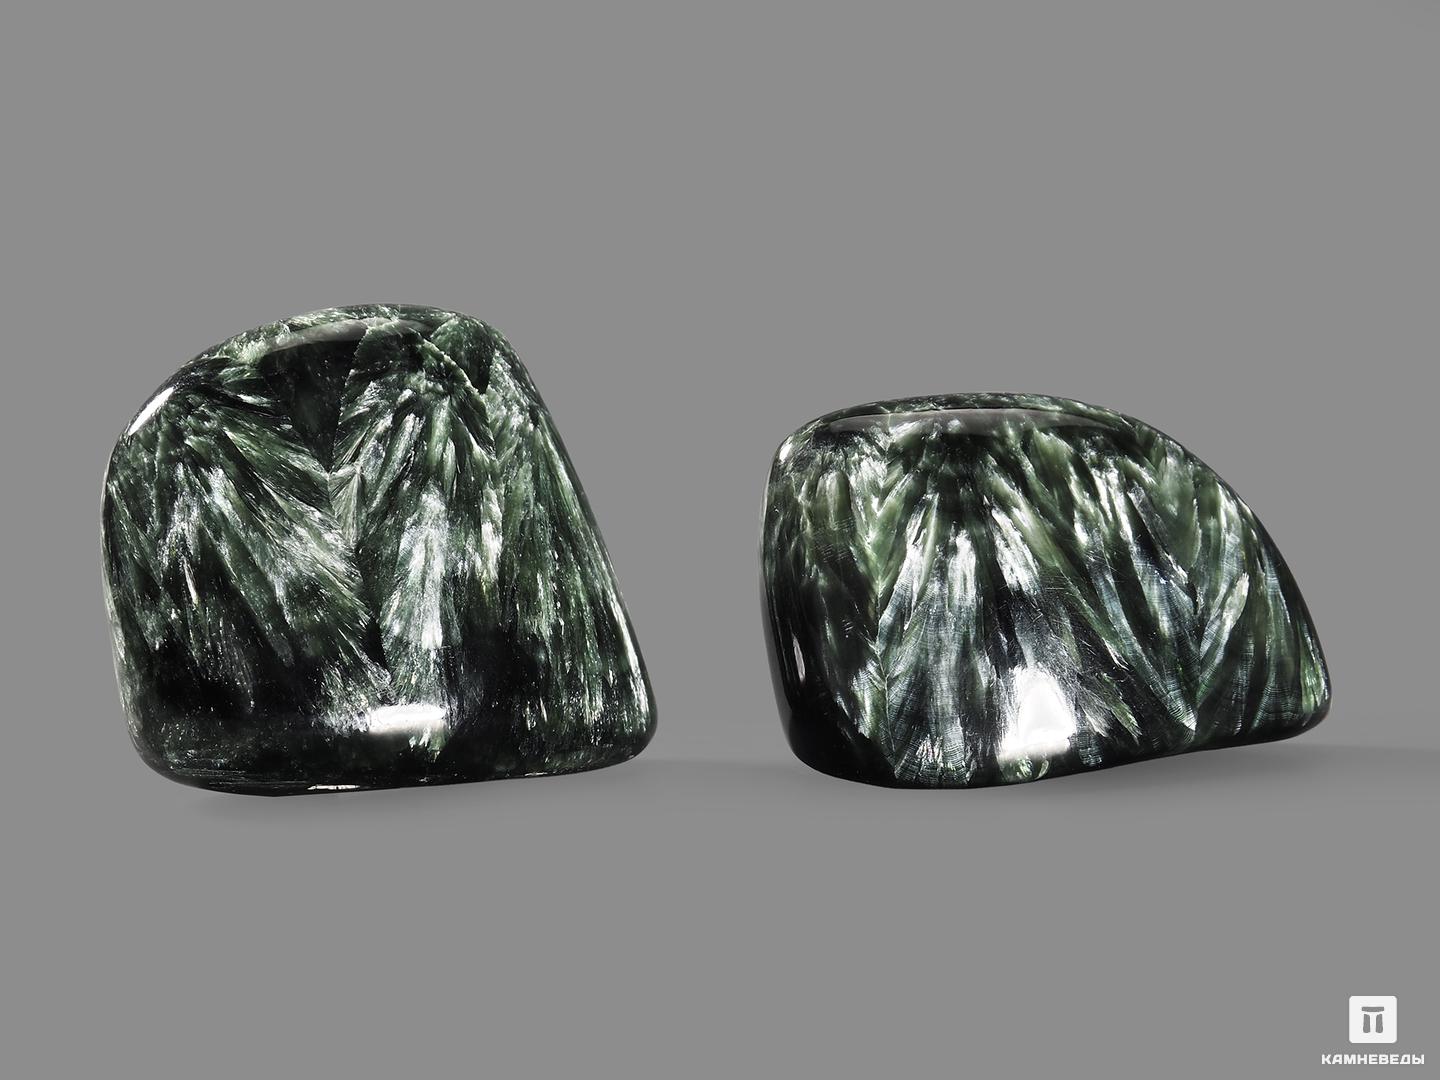 Клинохлор (серафинит), полировка 4,5-6 см, 19599, фото 2